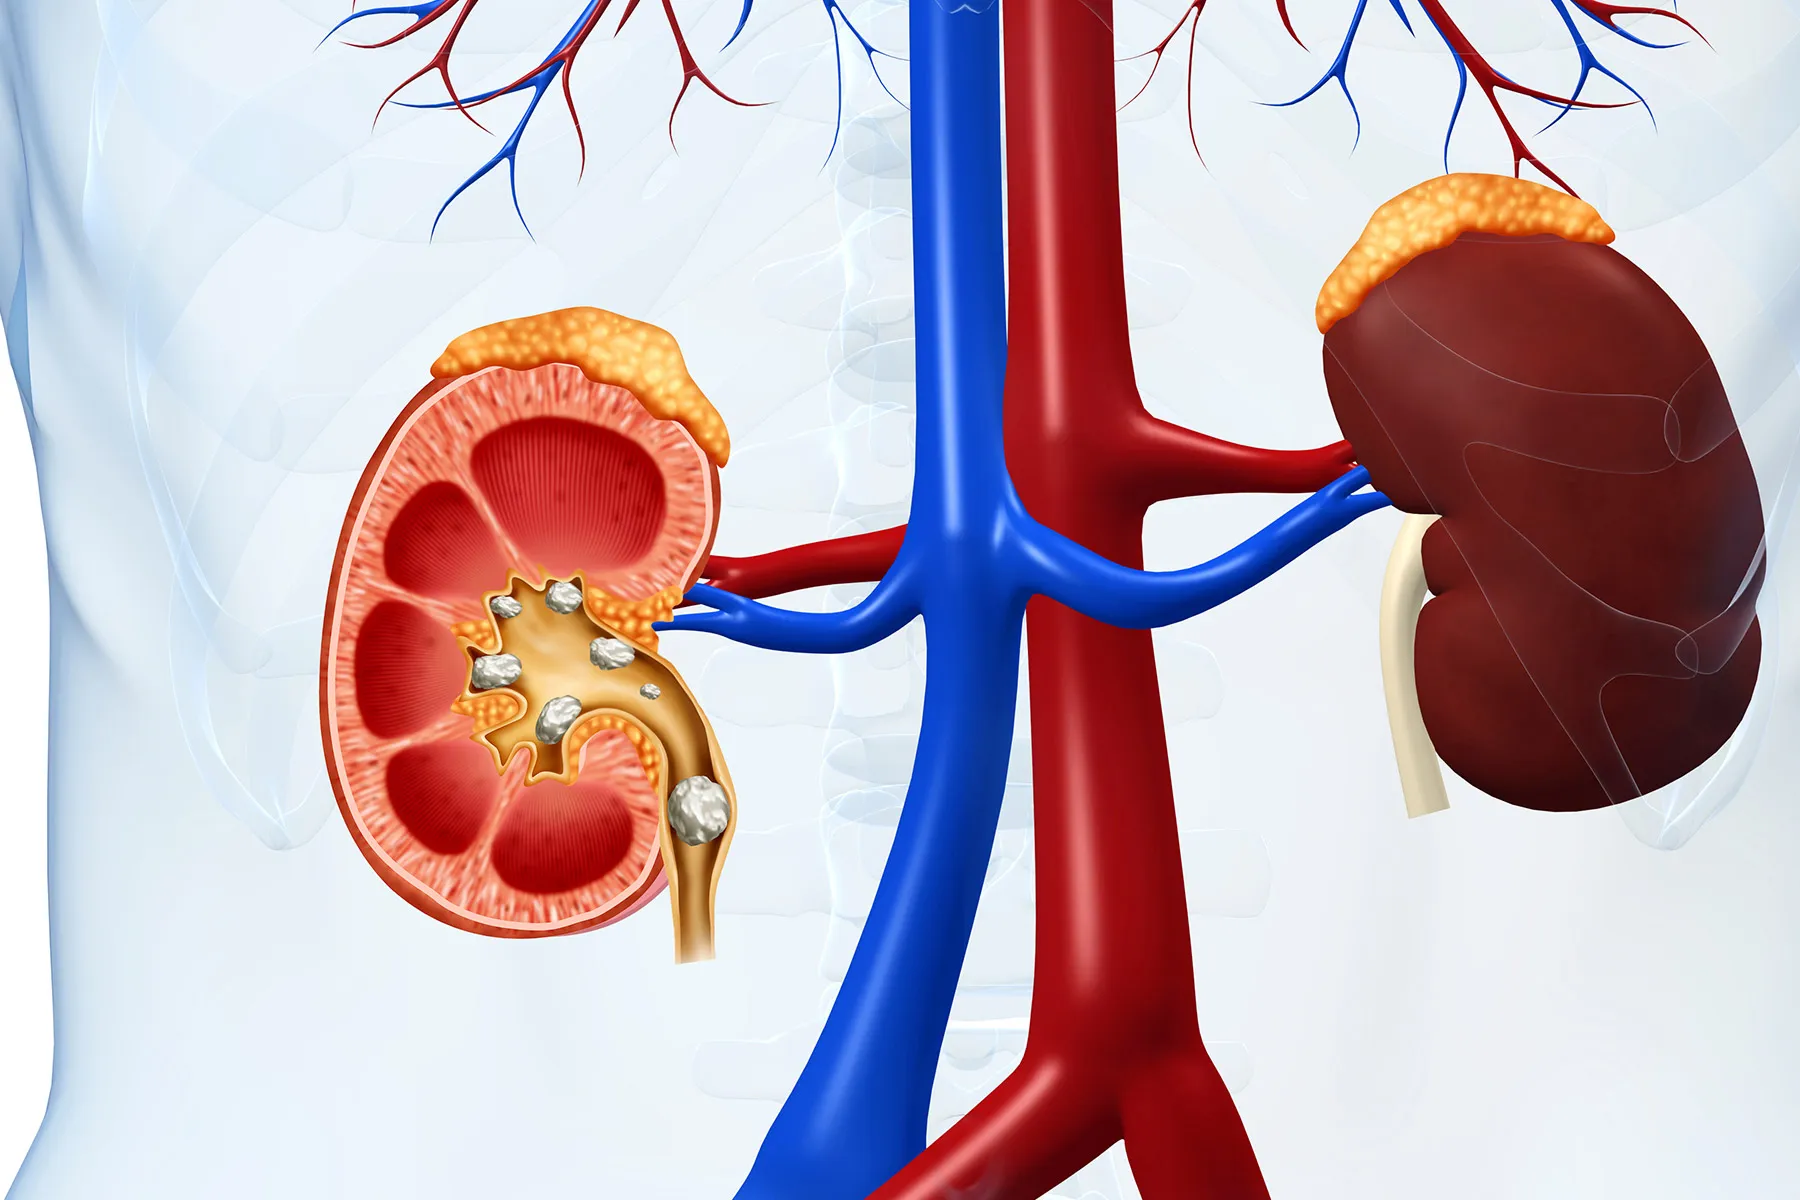 kidney stones illustrationkidney stones illustrati